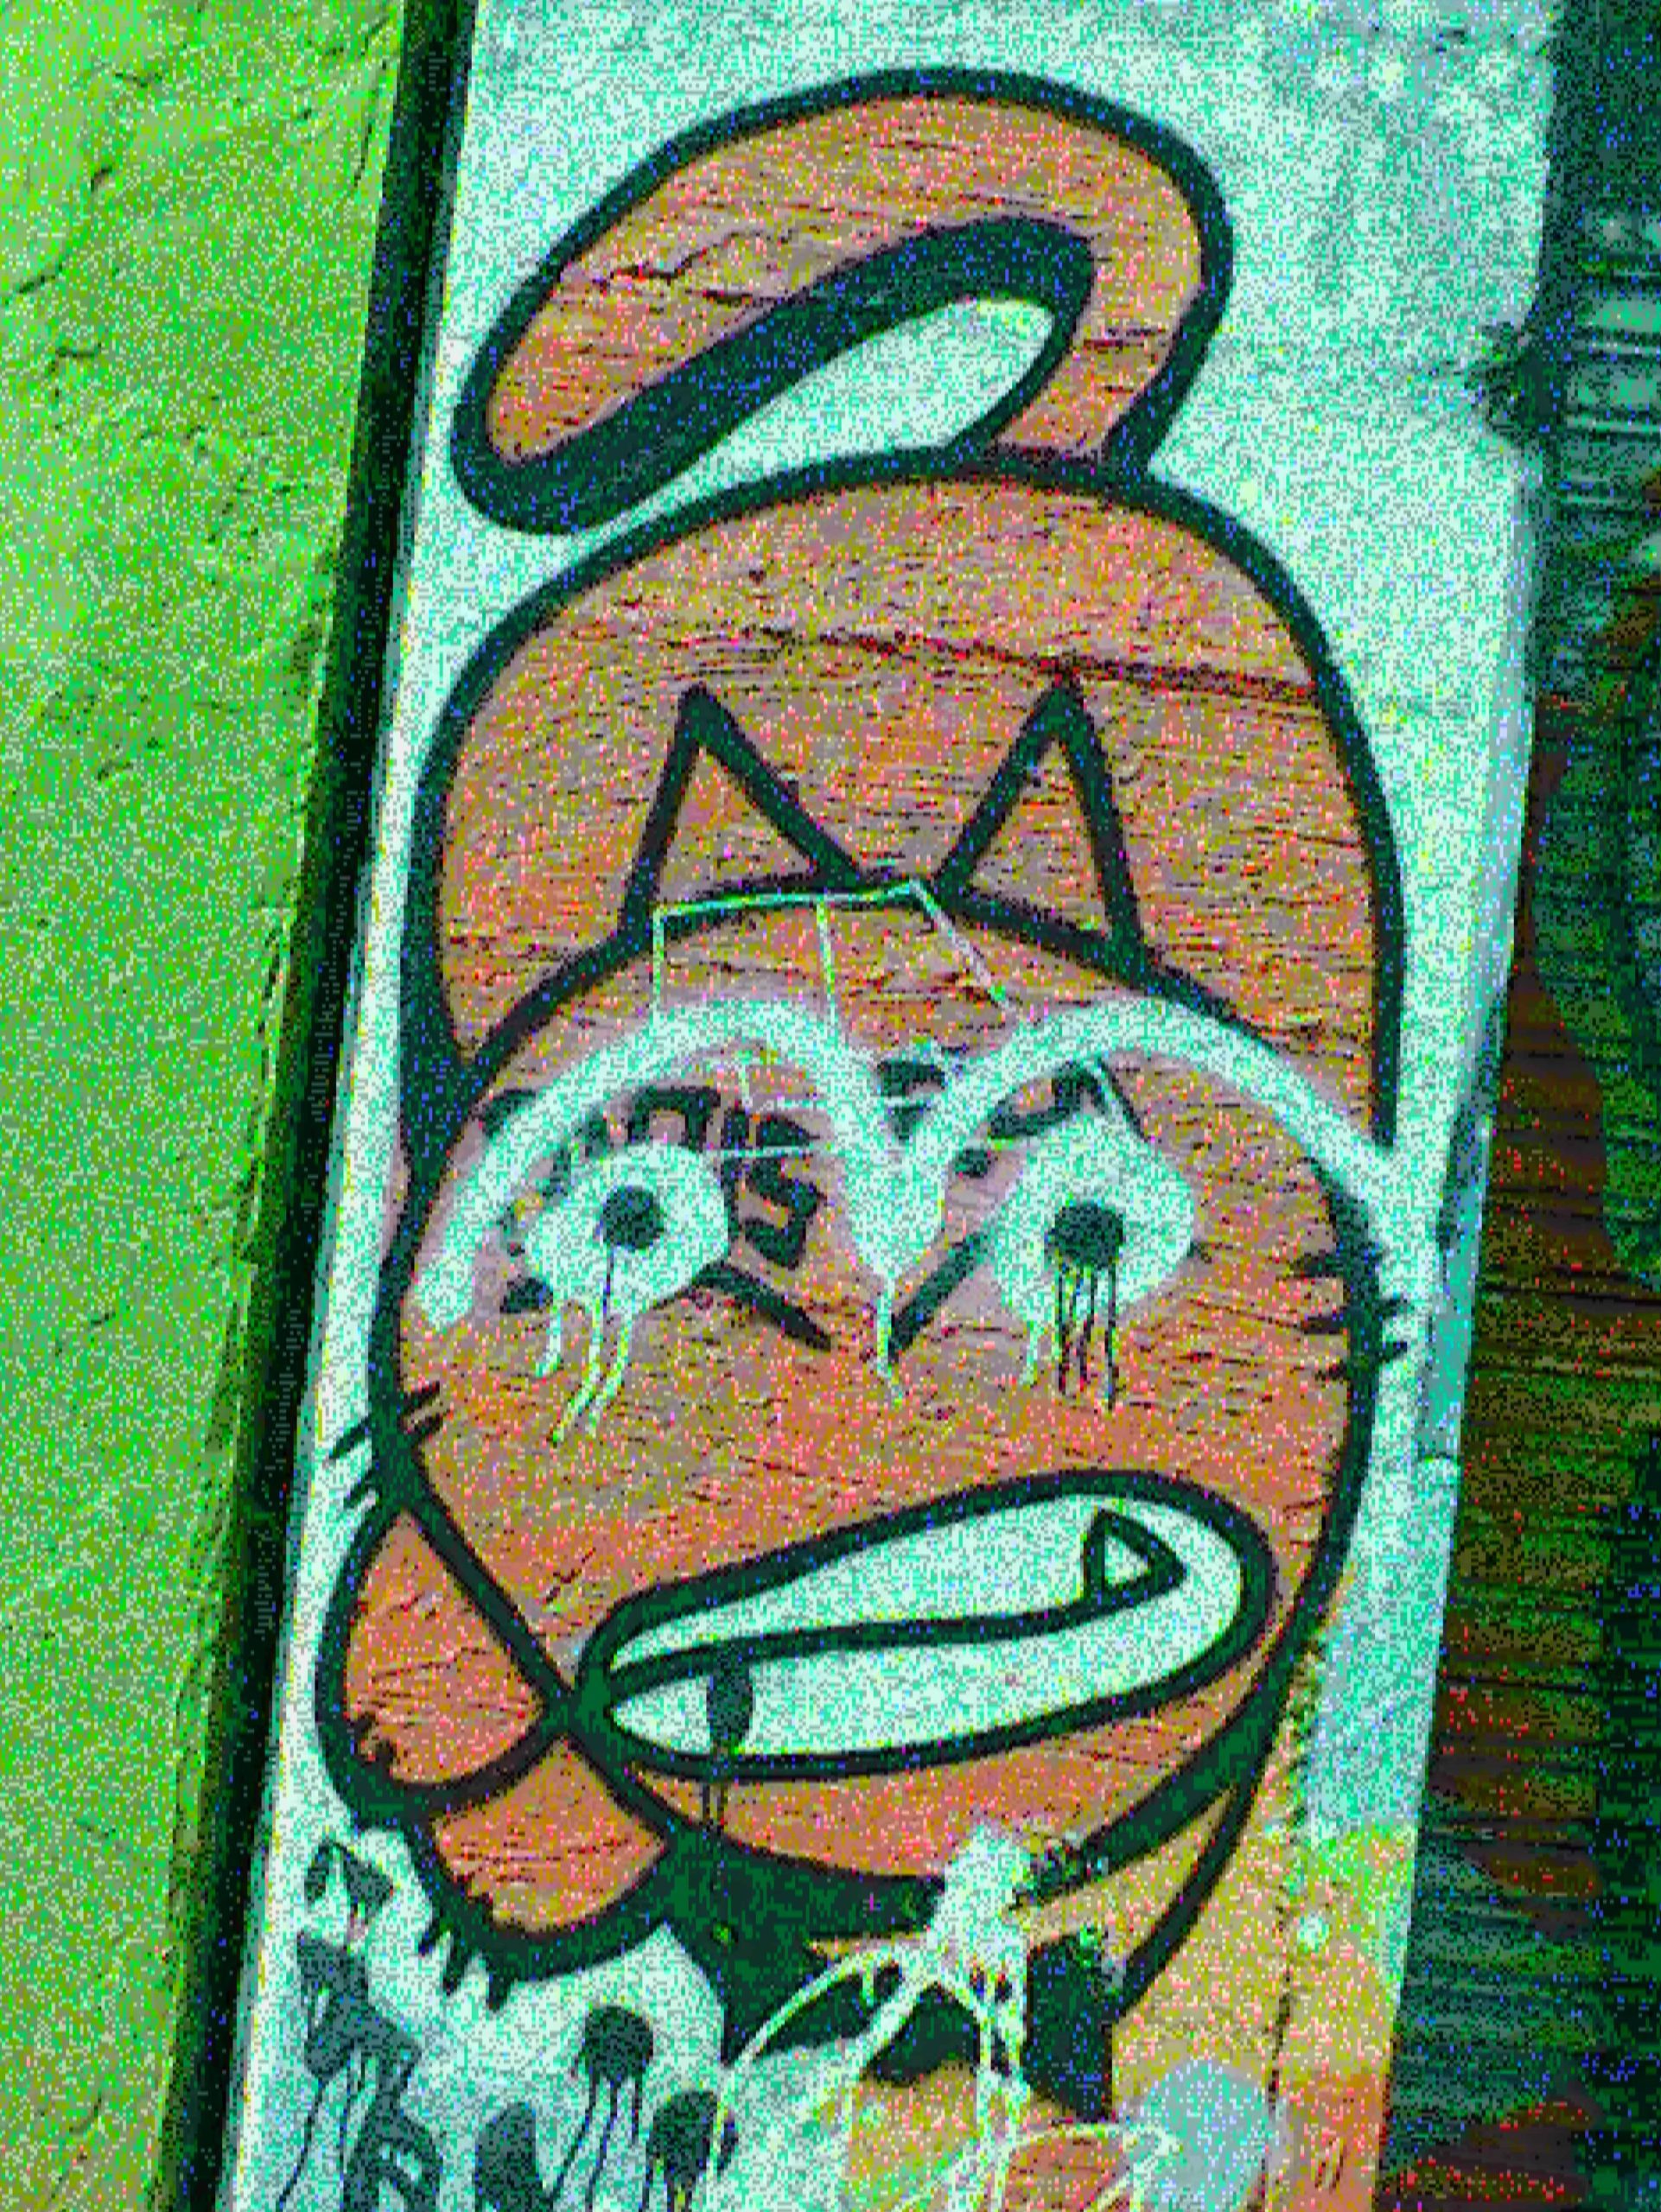 A sample glitch camera image taken of a graffiti cat - 2 of 2